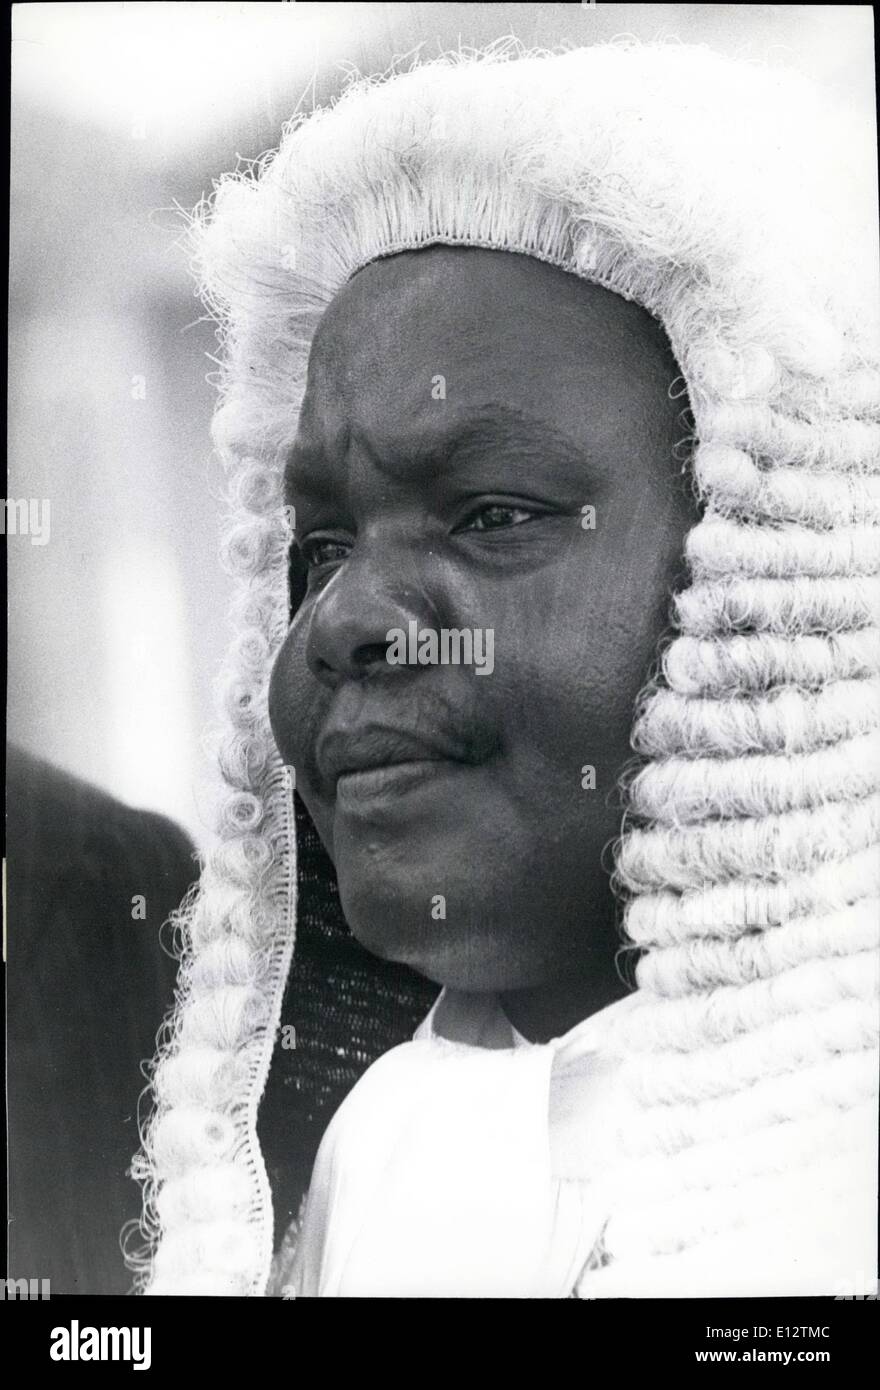 Feb. 24, 2012 - MR F.M.G.MATI, MP. Speaker of Kenya's National Assembly. Stock Photo